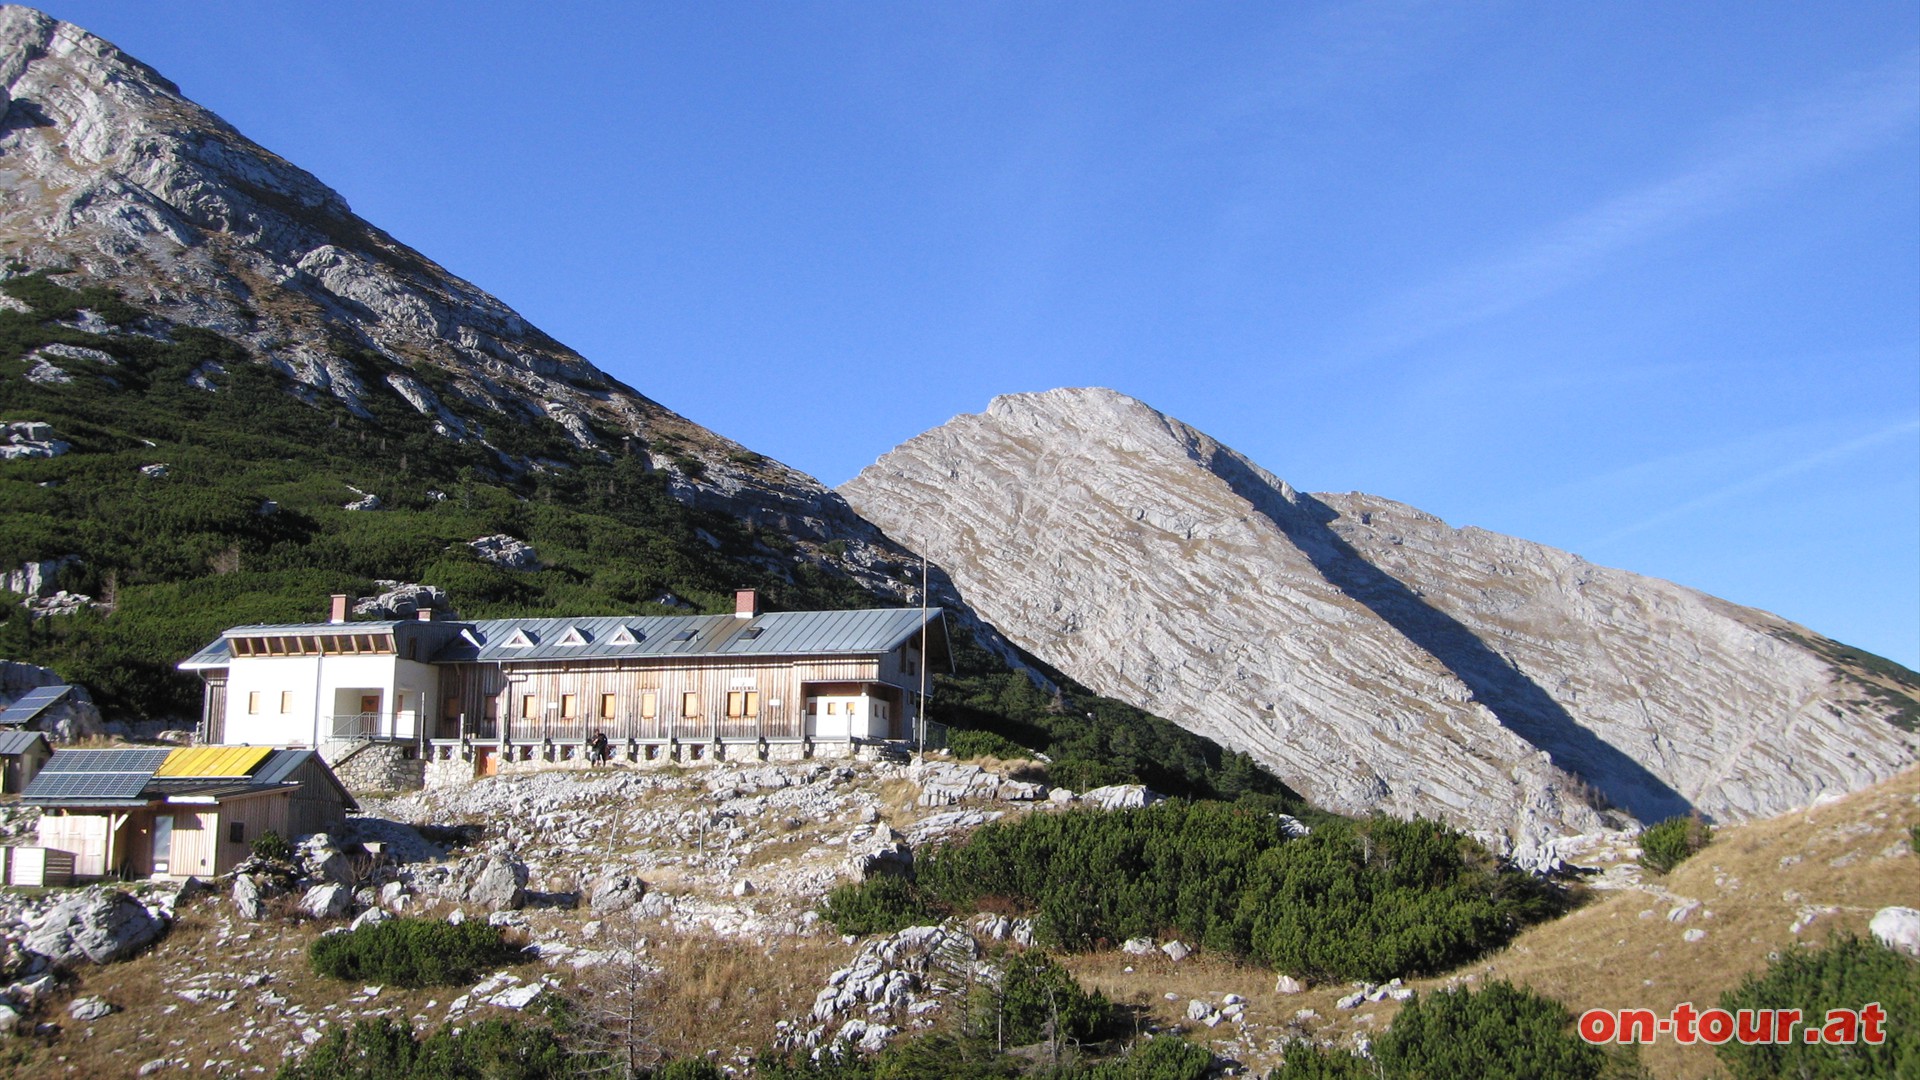 Die Hesshütte liegt genau in der Einsattelung zwischen Zinödl und Hochtor. Im Hintergrund die Planspitze. Bei der Hütte Rechts Richtung Zinödl.